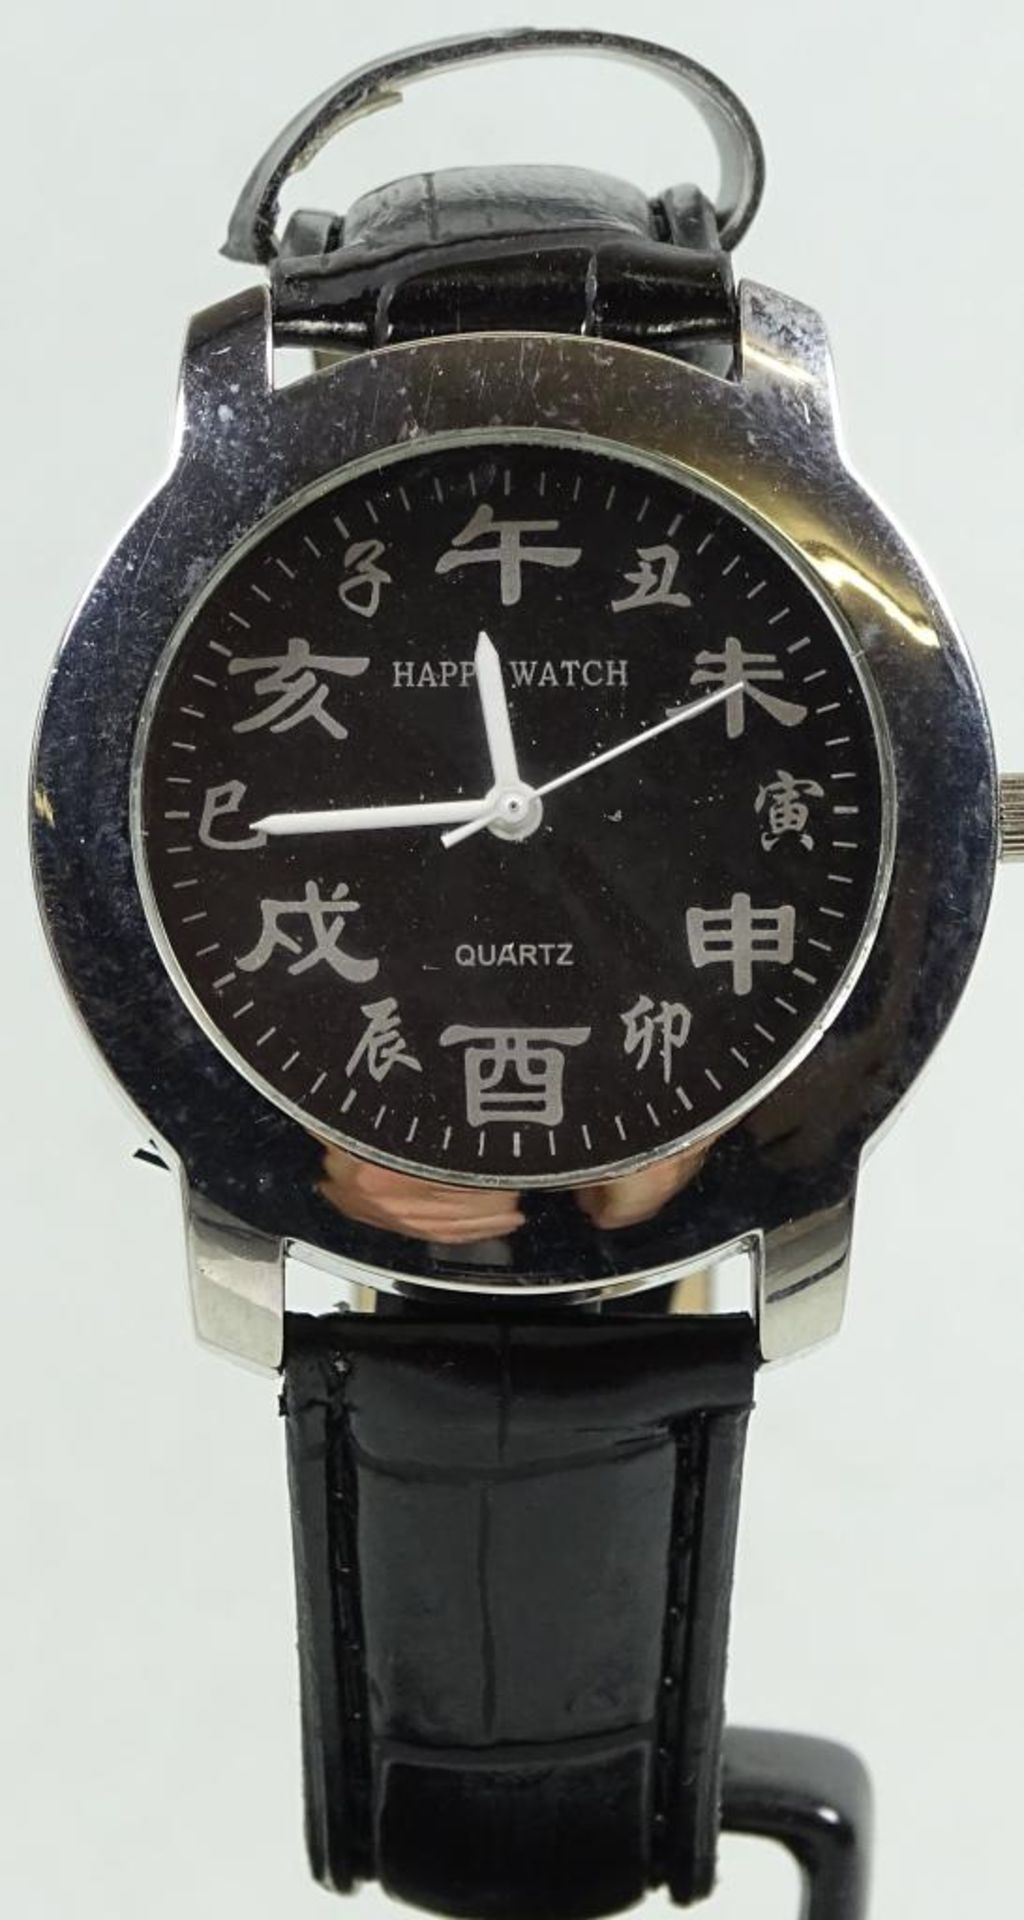 Armbanduhr "Happy Watch", Quartz,Neu und ungetragen